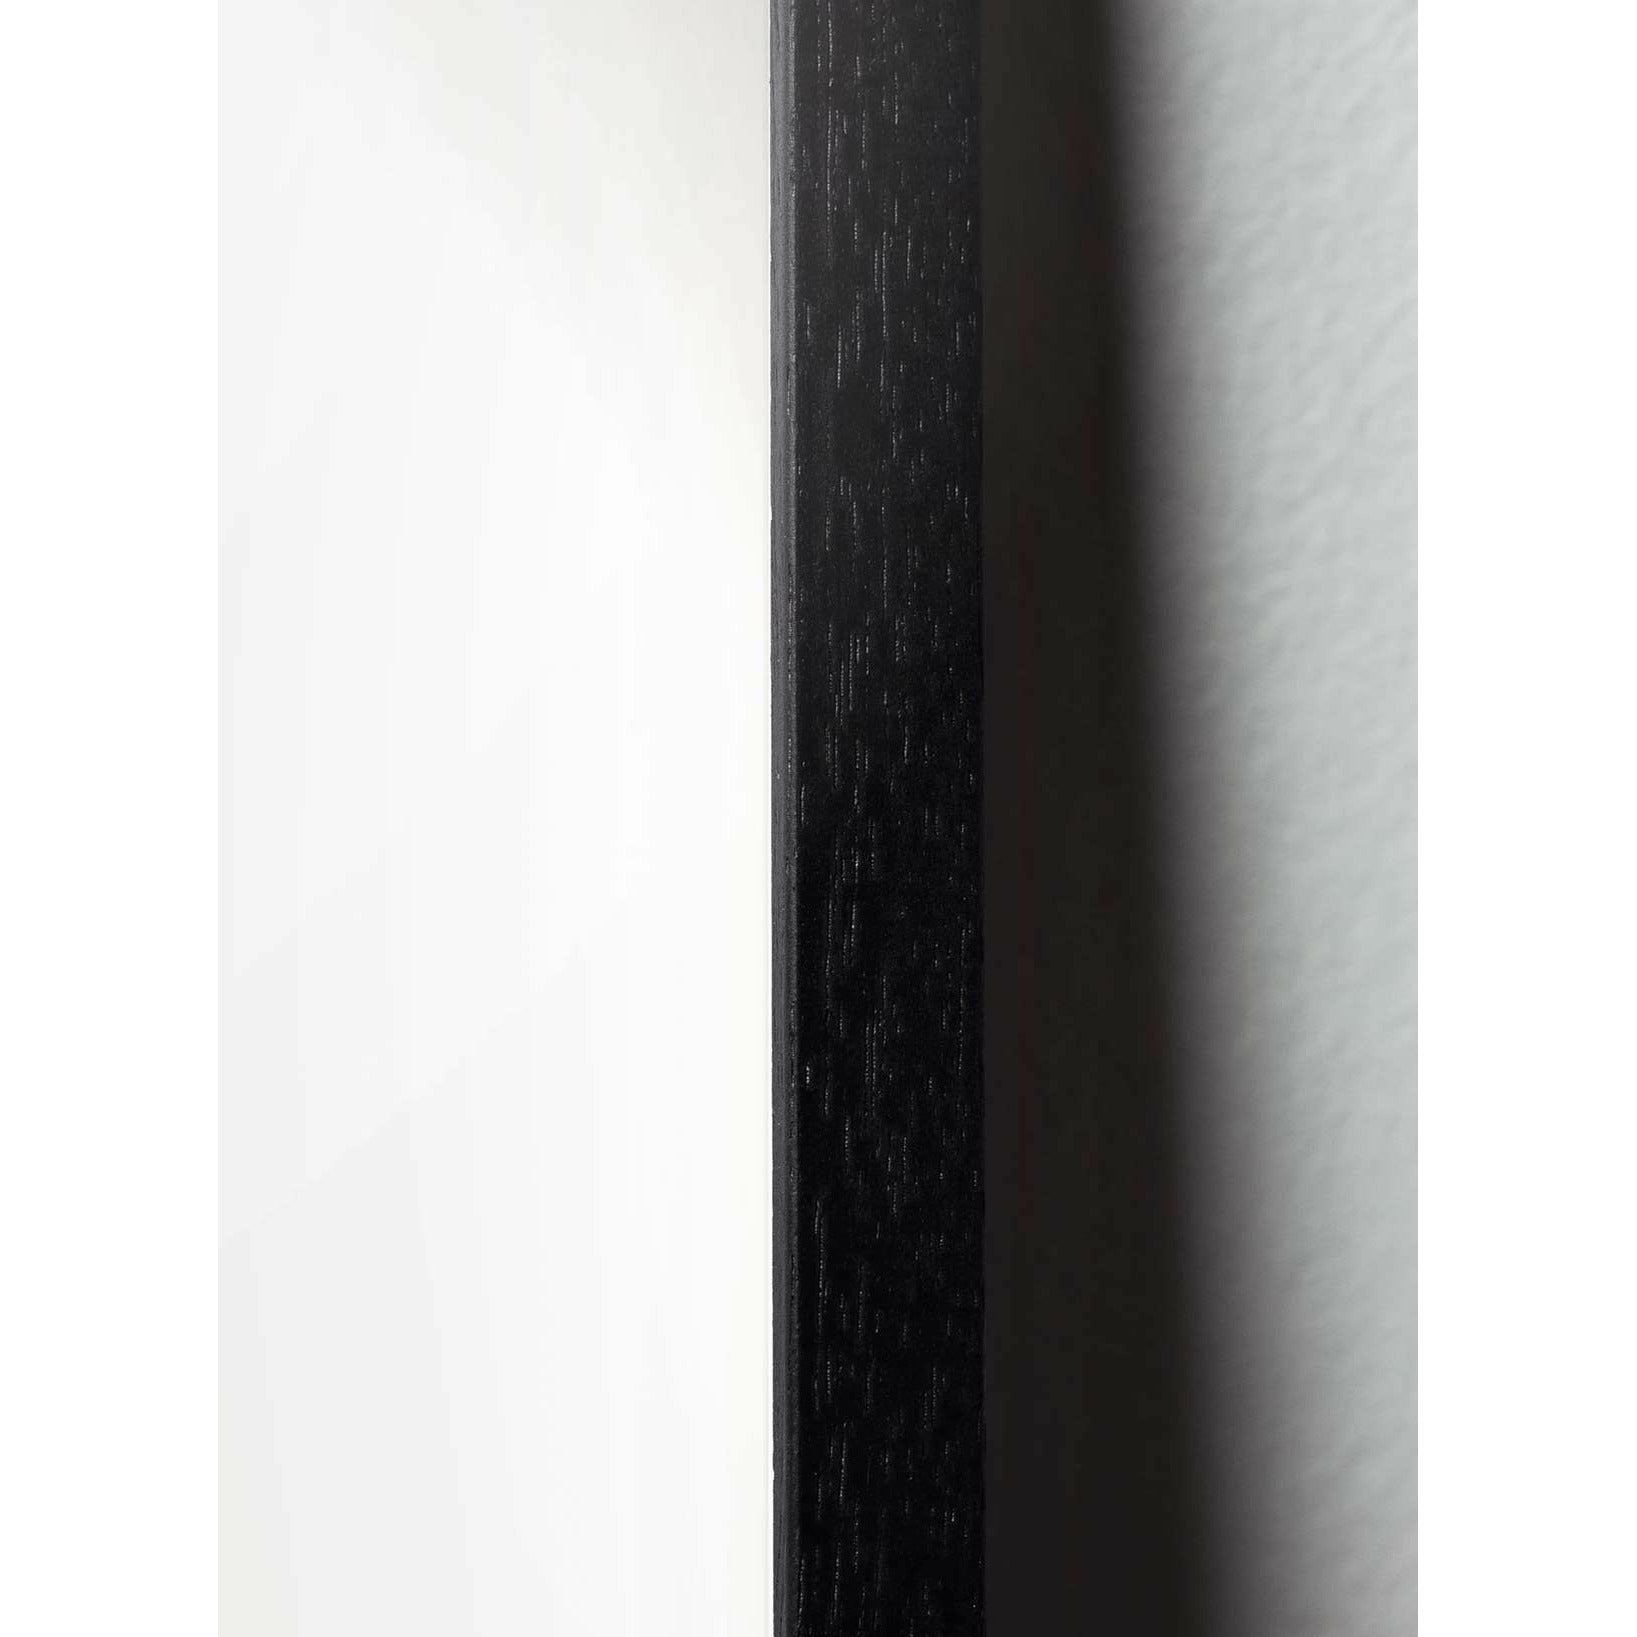 Brainchild Schwan Design Icon Poster, Rahmen aus schwarz lackiertem Holz 30x40 Cm, lila